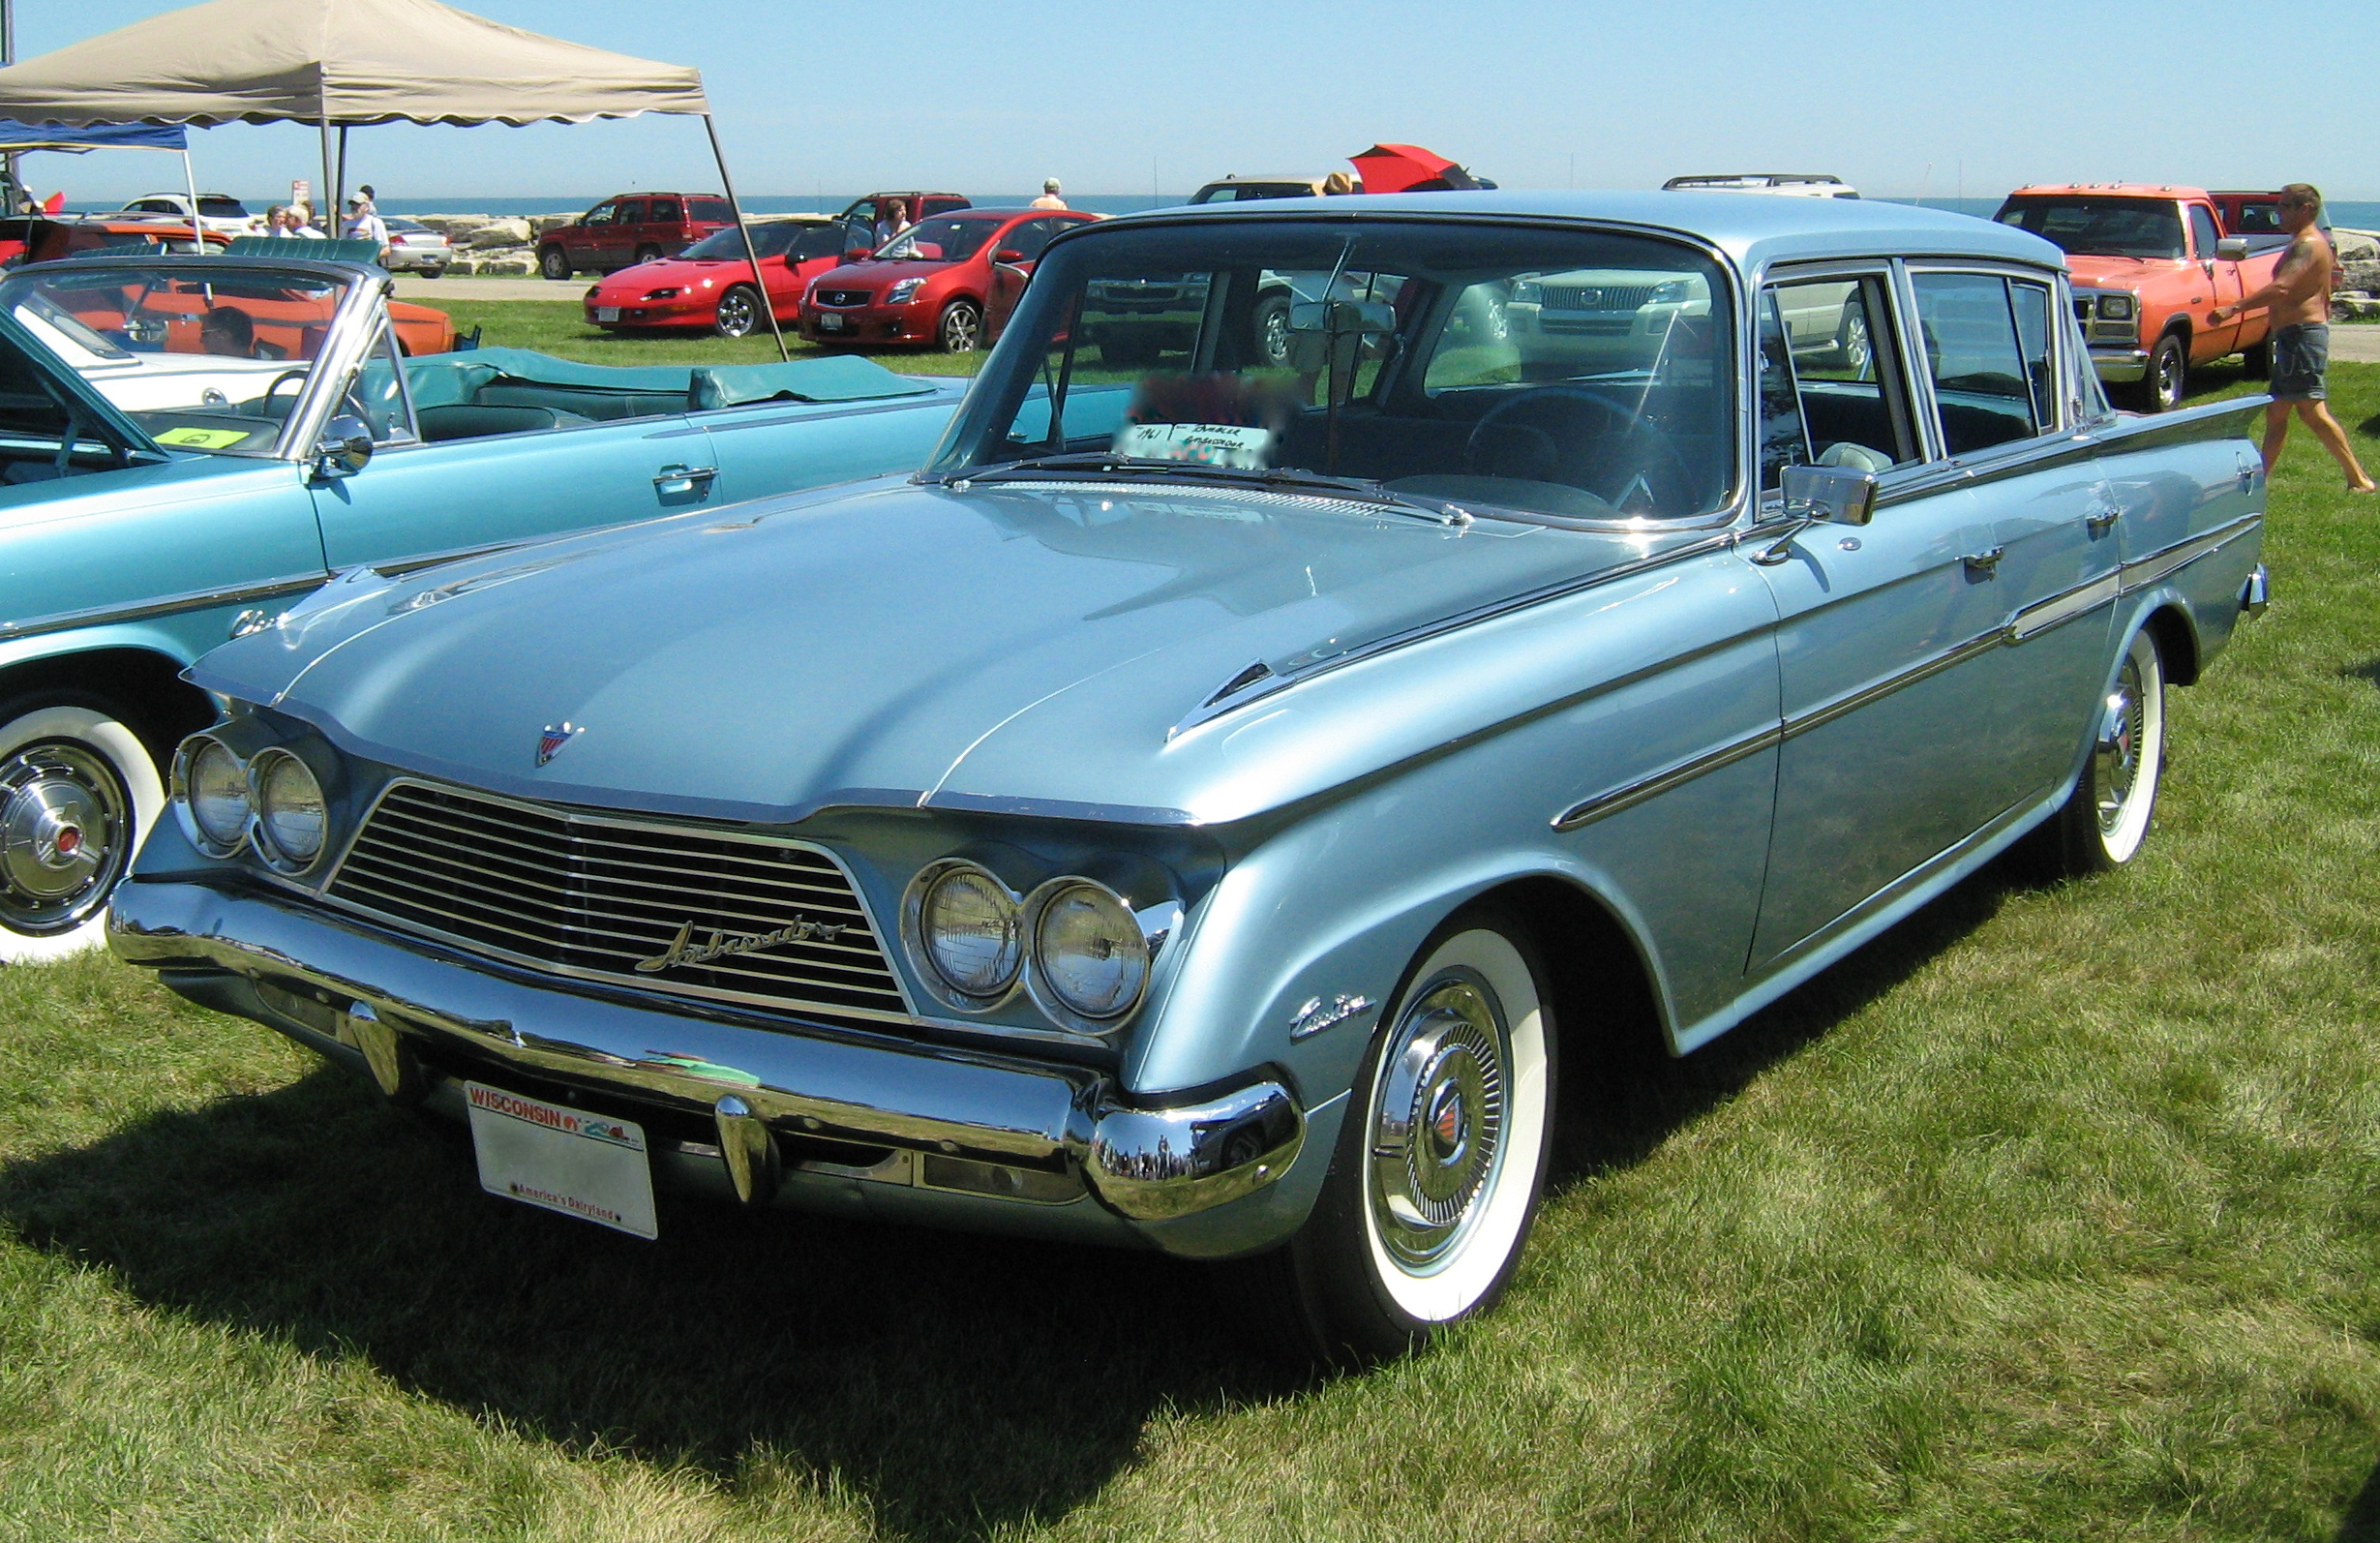 1961 Rambler Classic Sedan - CarPatys.